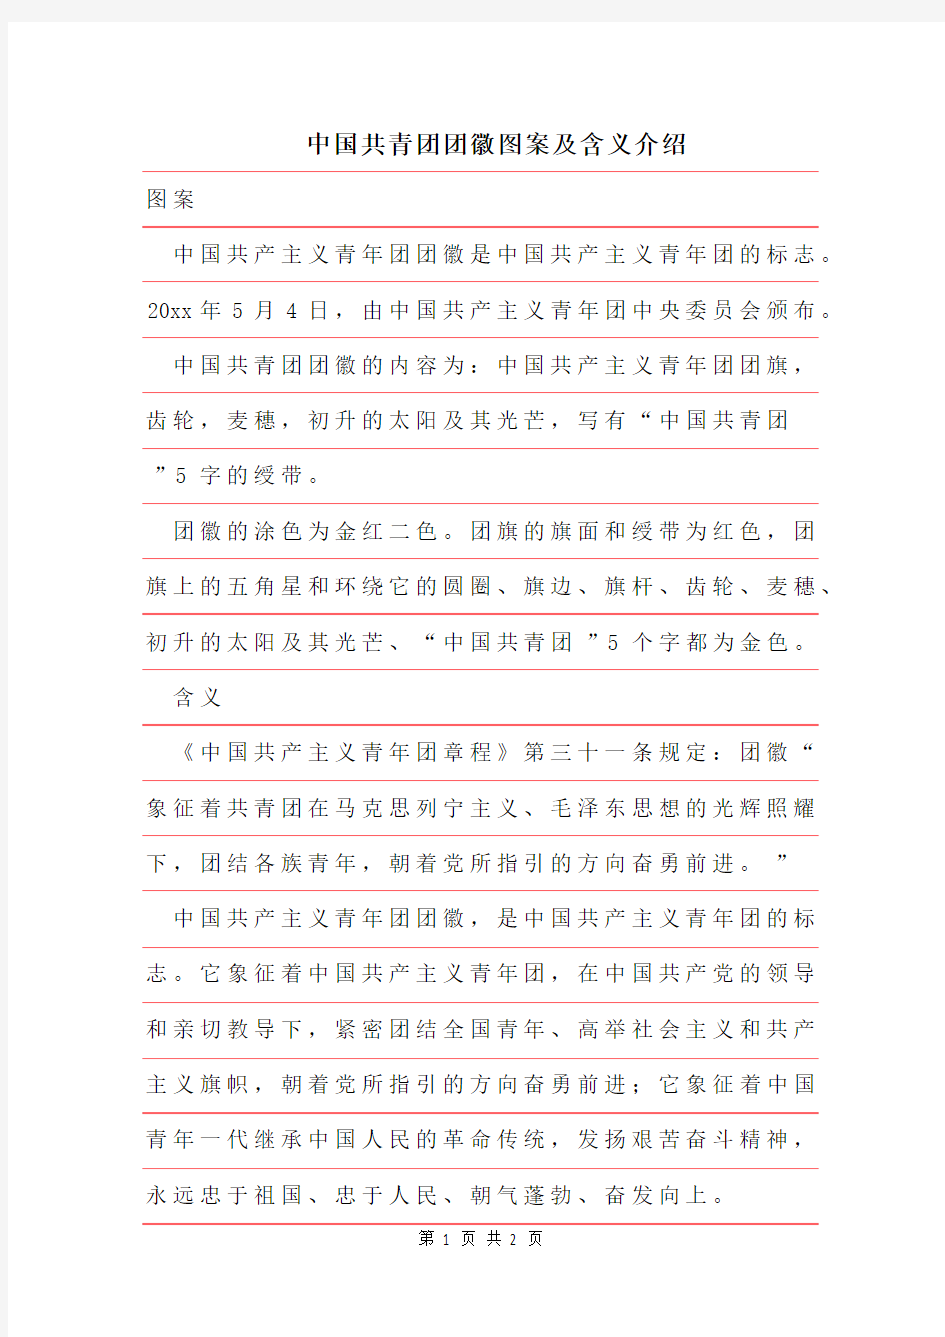 2019年中国共青团团徽图案及含义介绍